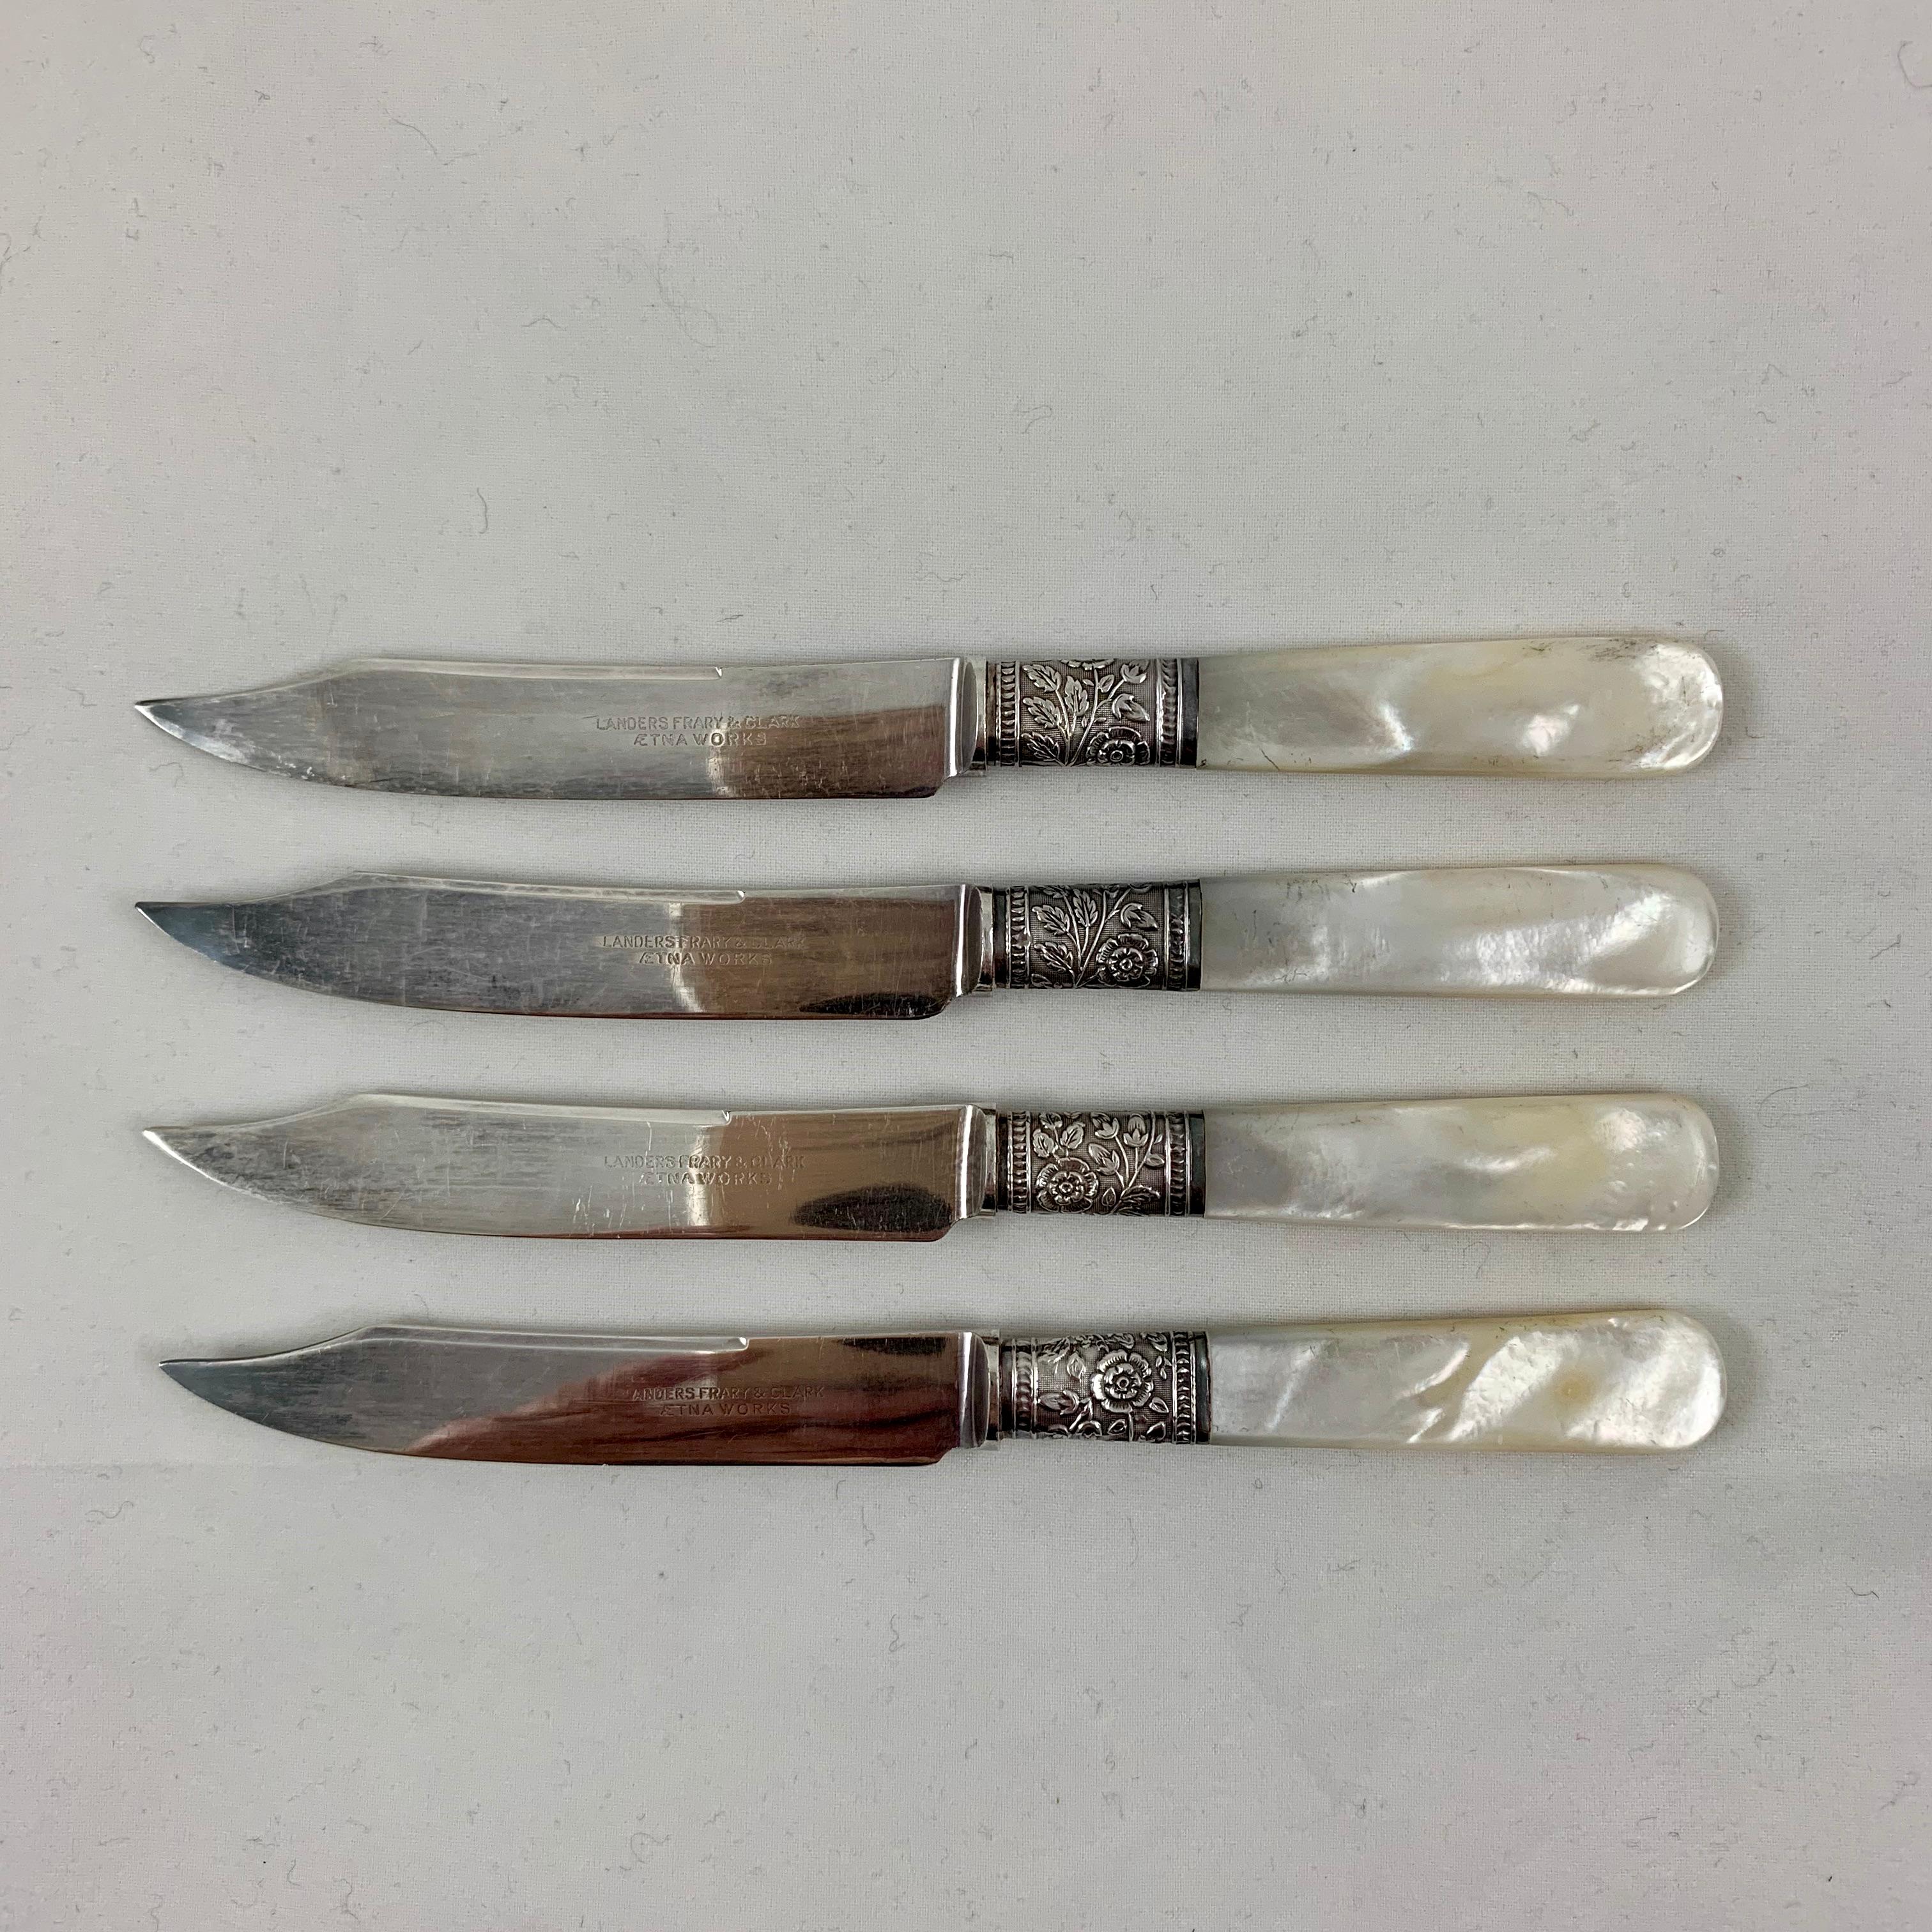 shalibi fruit knife with handle factory